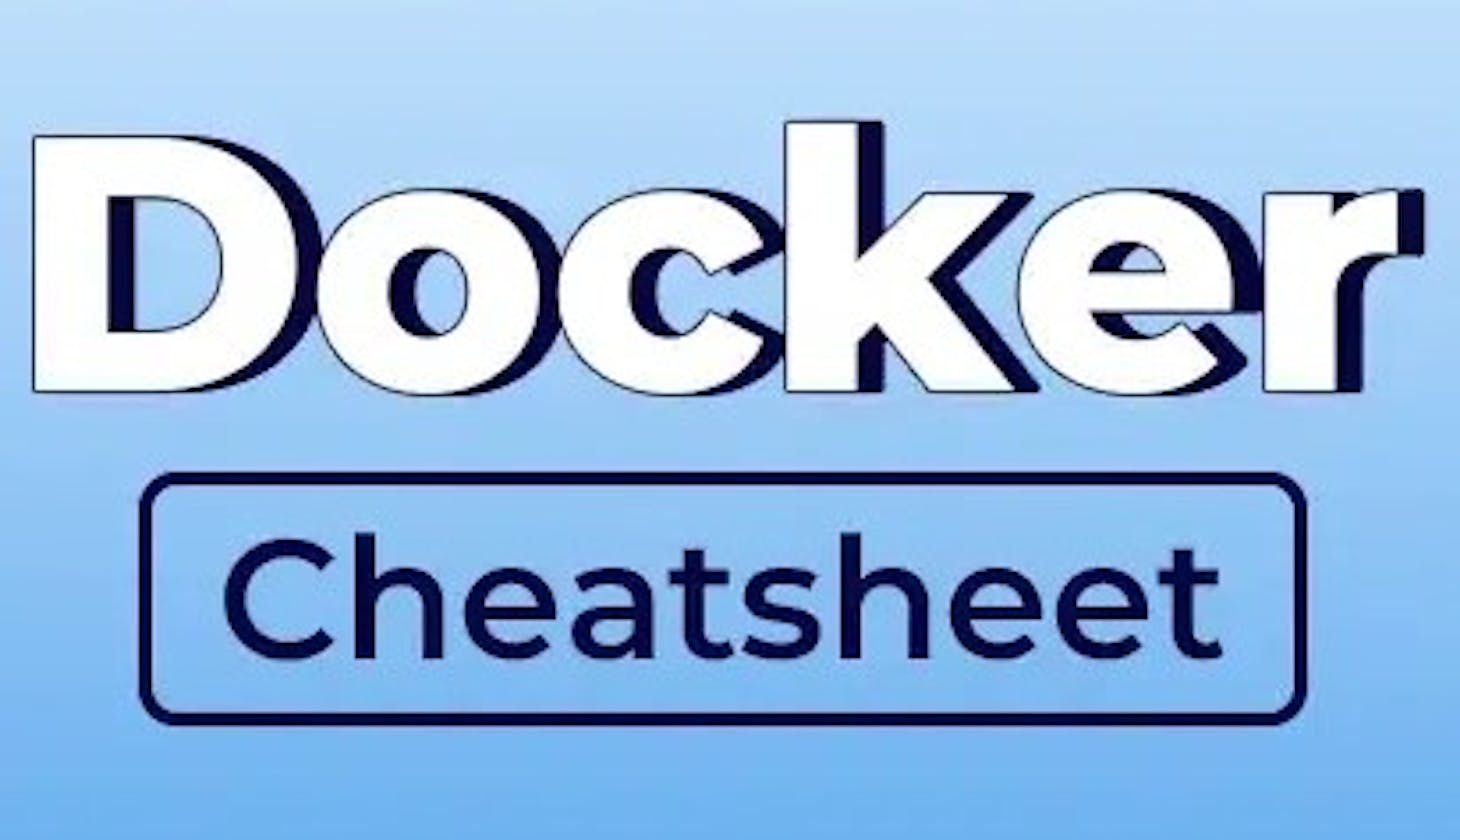 Day 20: Docker Cheatsheet